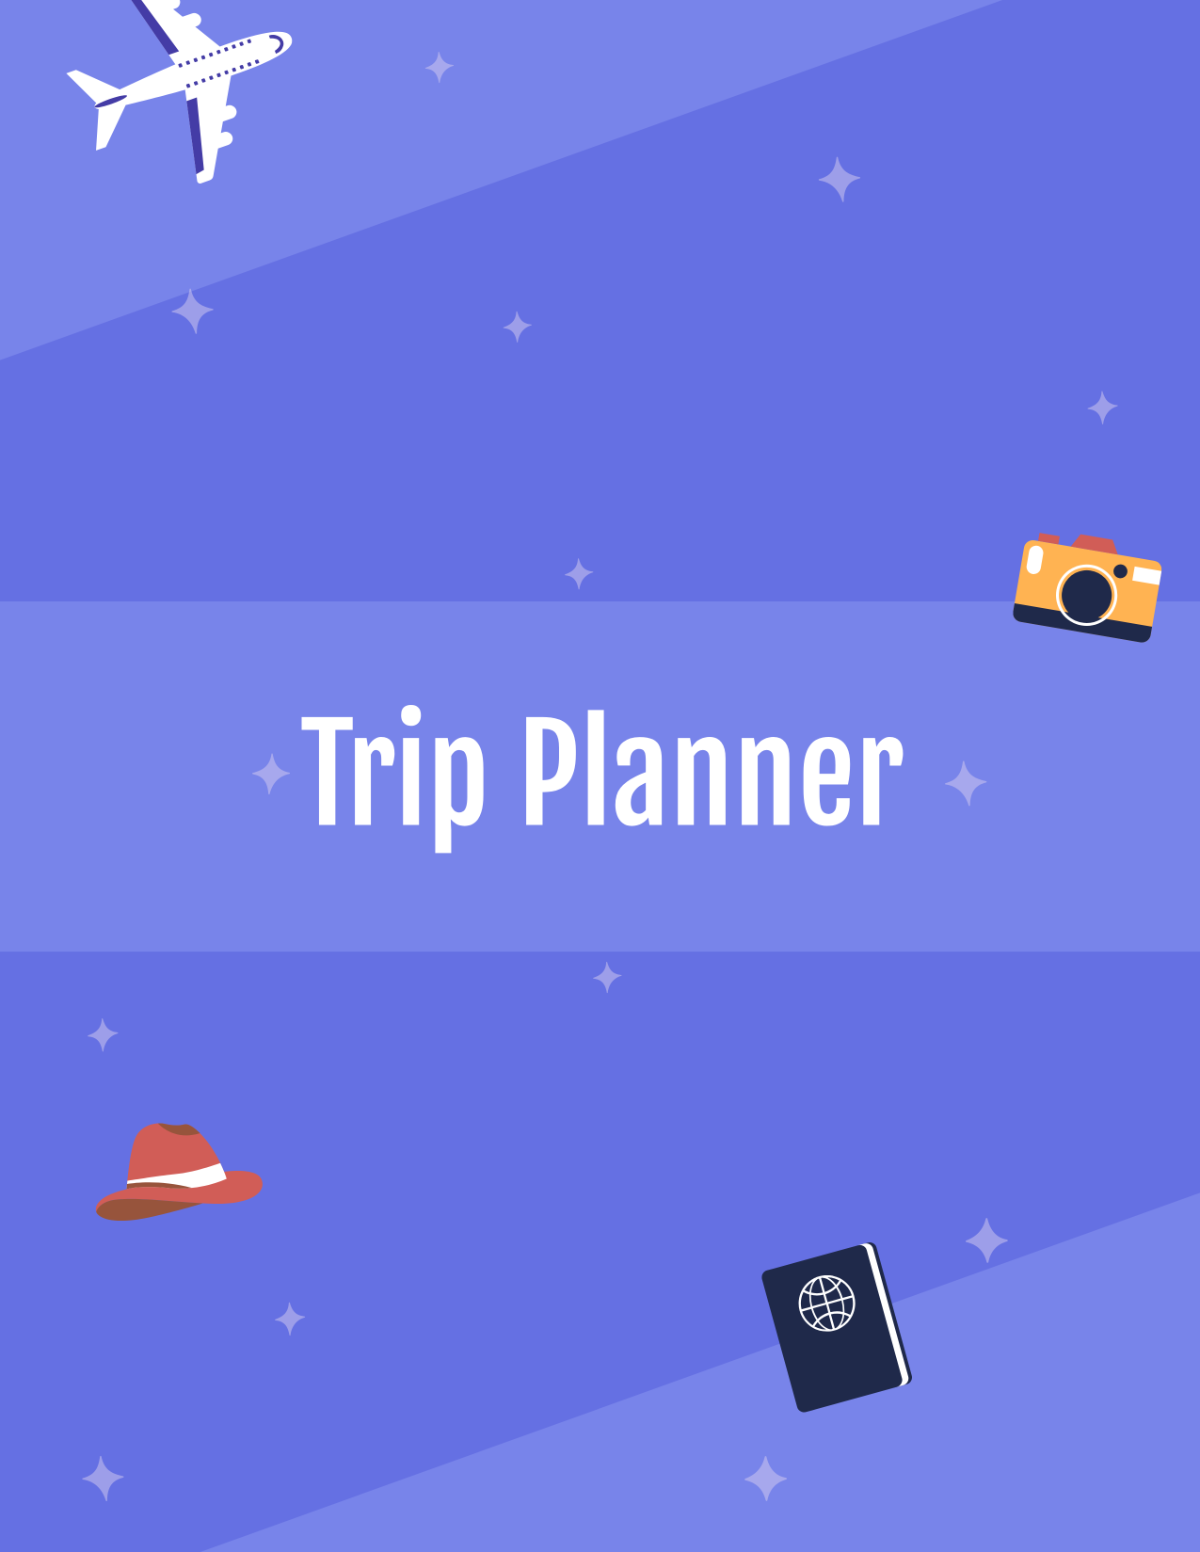 Kids Road Trip Planner Template